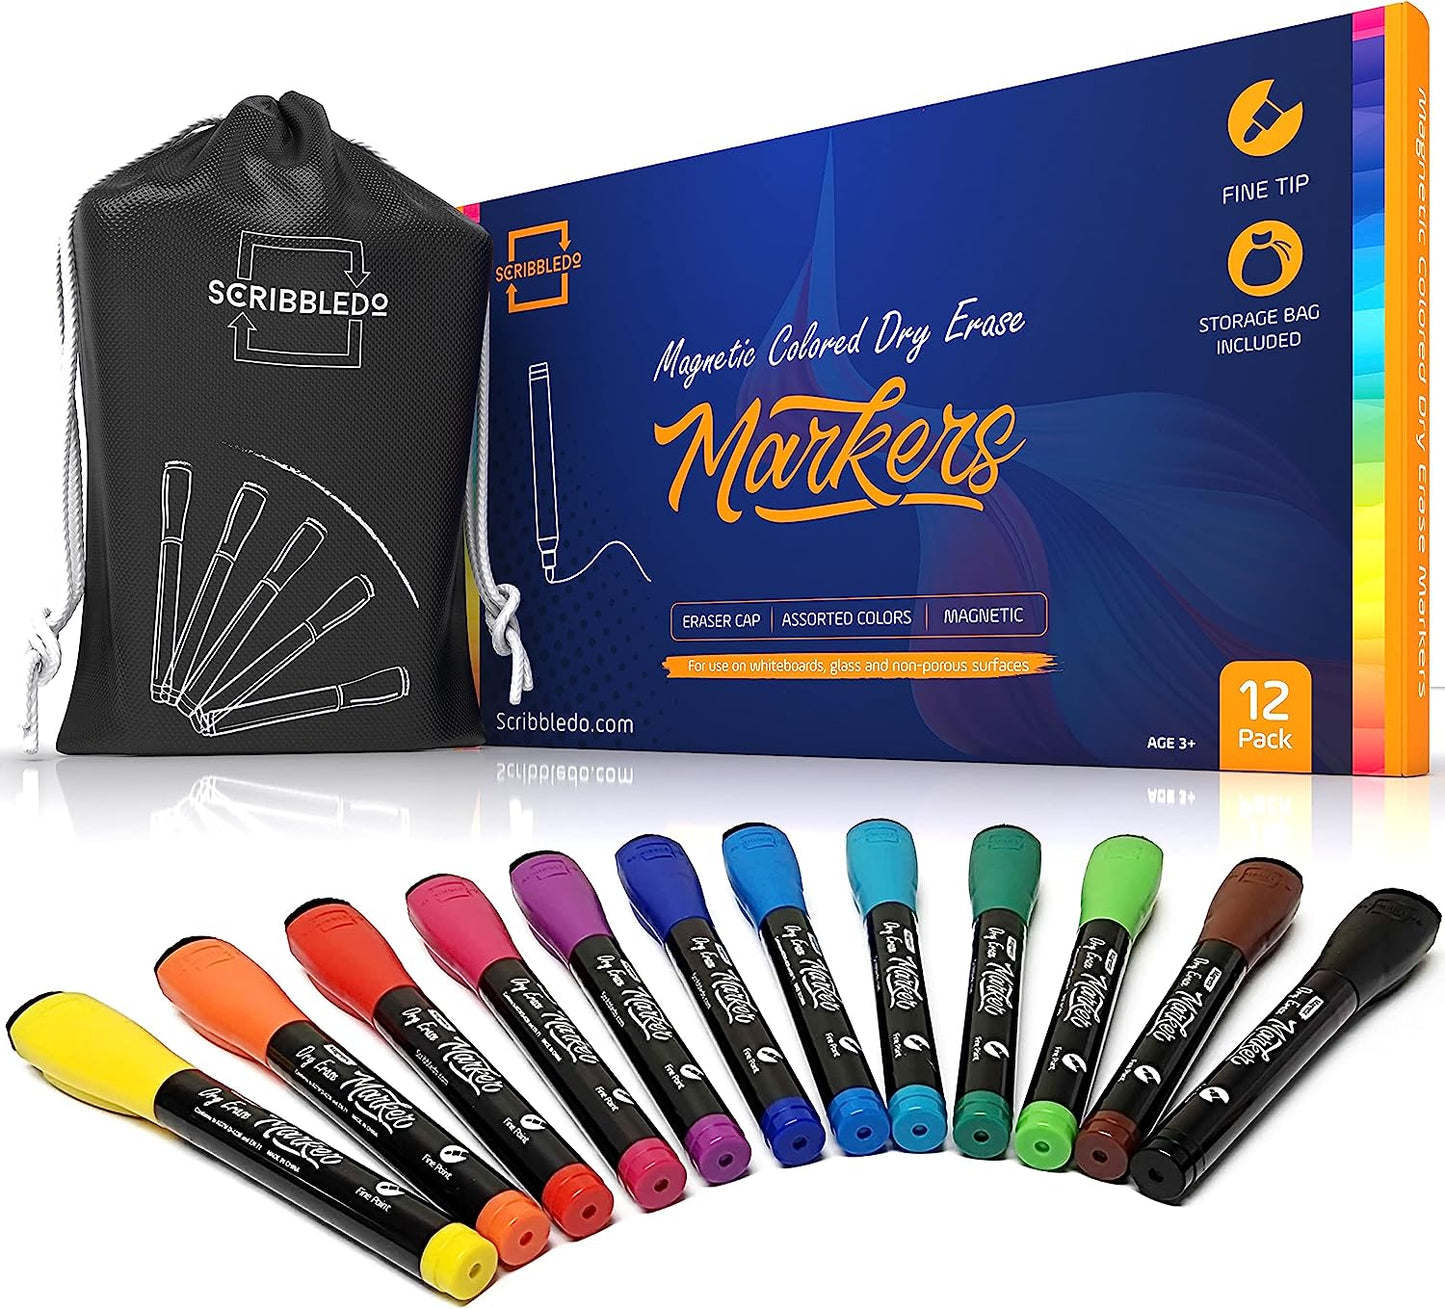 Magnetic Dry Erase Black Marker - 12 Pack, Extra Fine Tip